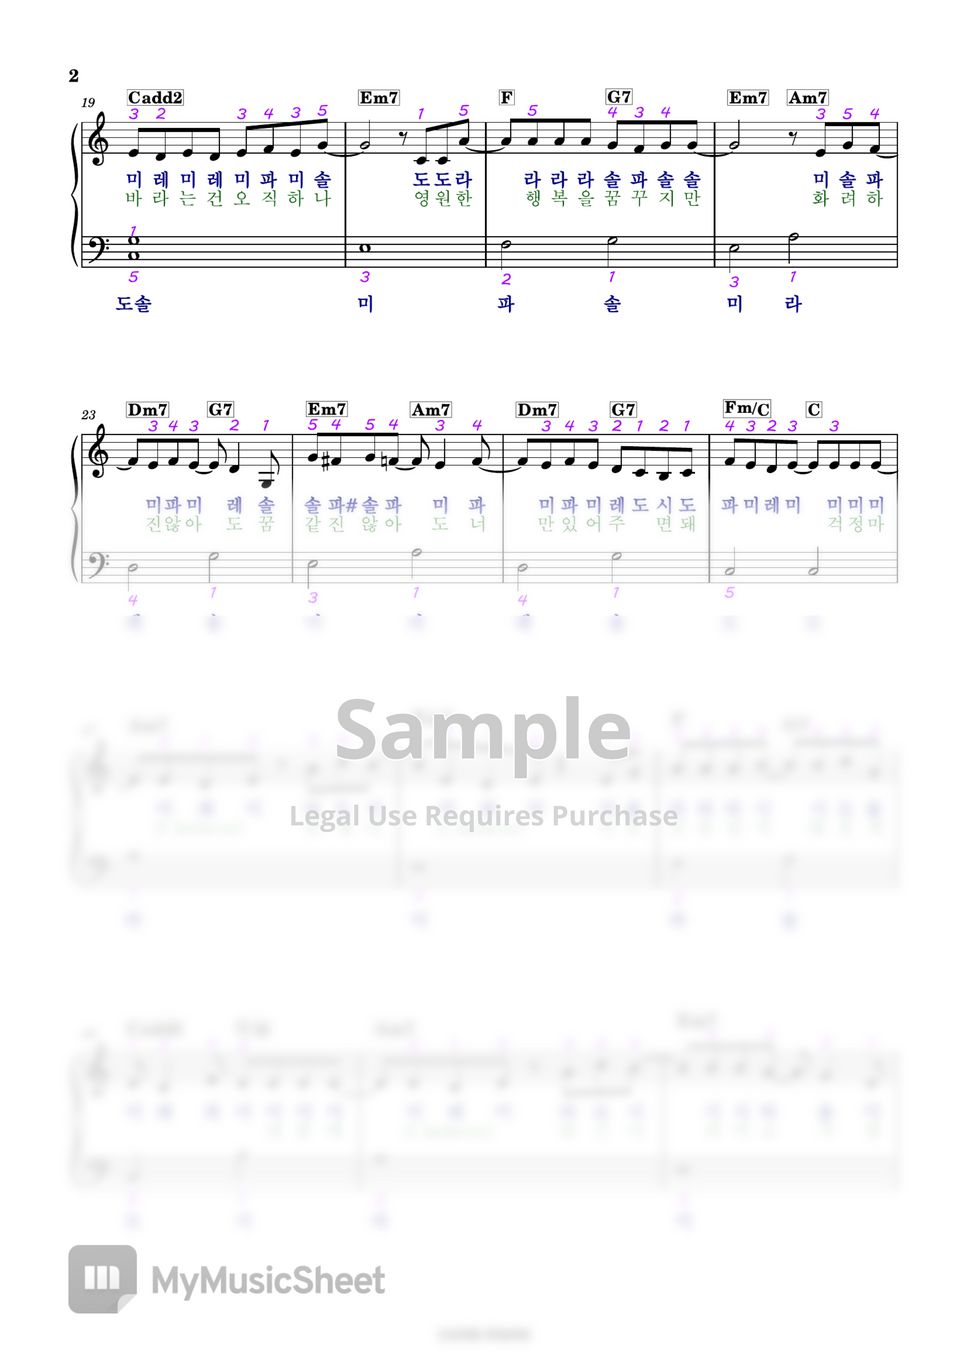 조정석 - 아로하 - 슬기로운 의사생활 OST Part 3 (계이름 악보, 다장조) by Lucid Piano